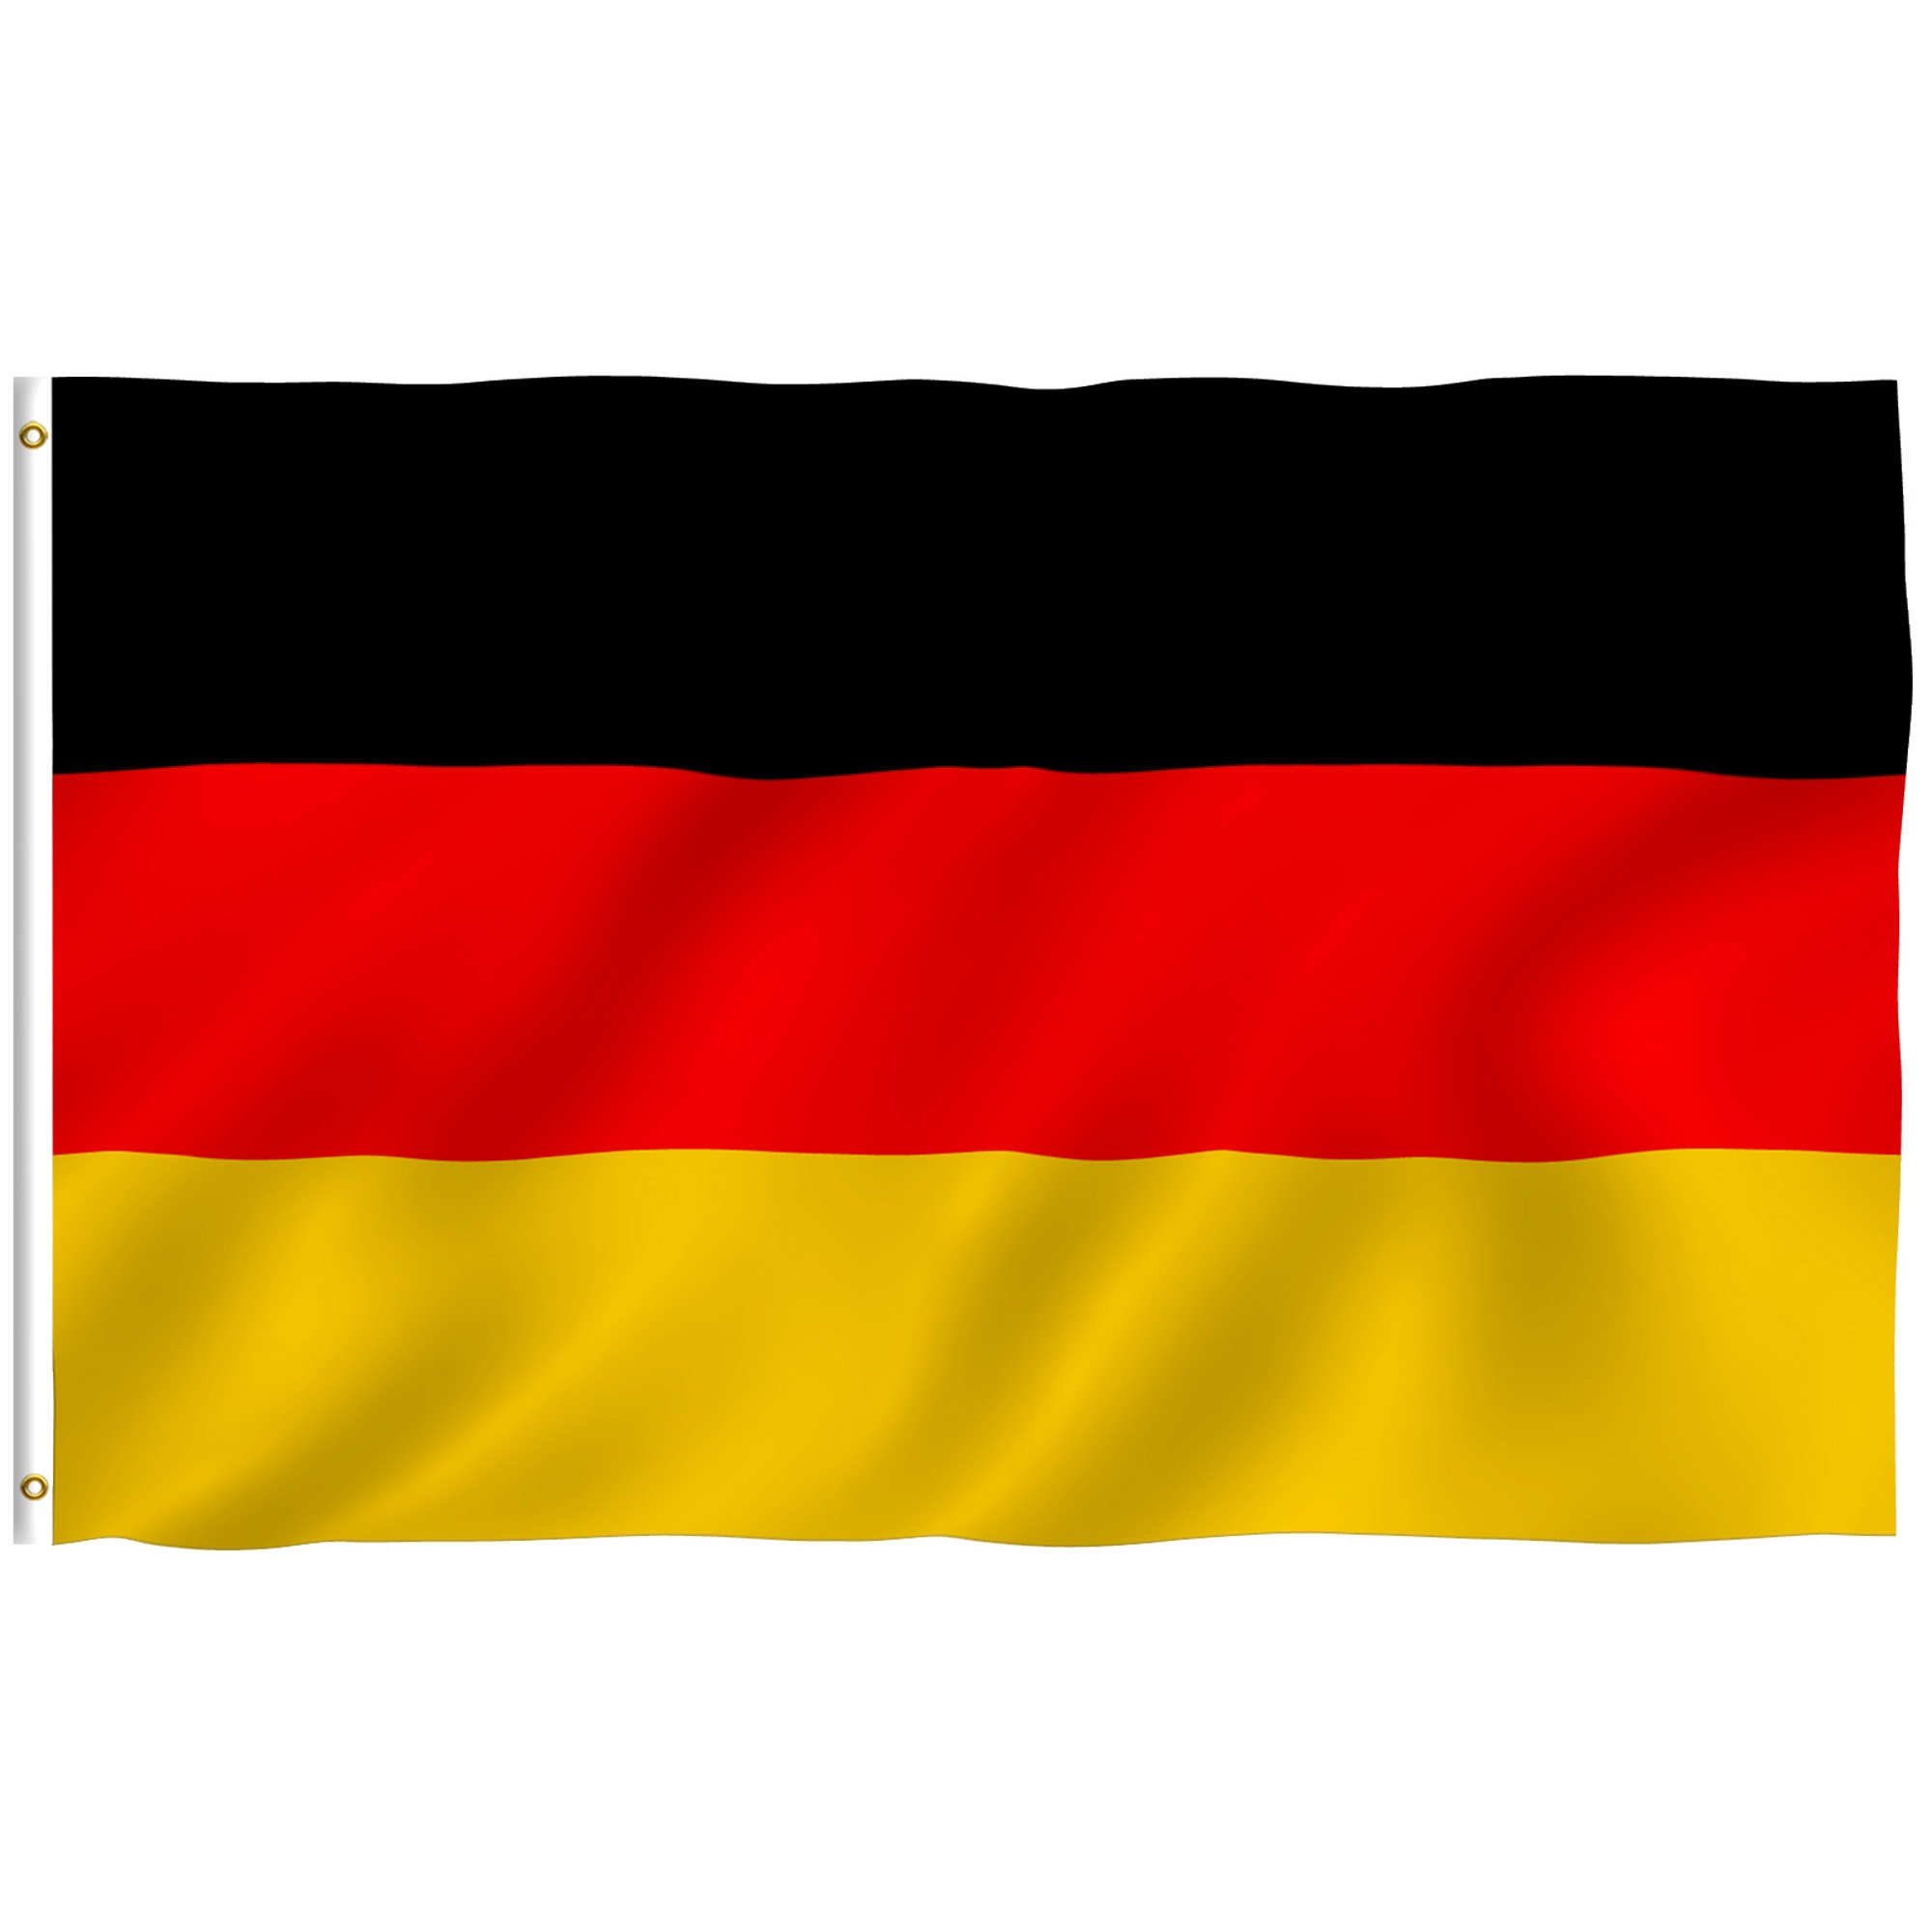 Купить в германии с доставкой в россию. Флаг Германии. Флаг ФРГ. Флаг Германии 1919. Флаг нац Германии.